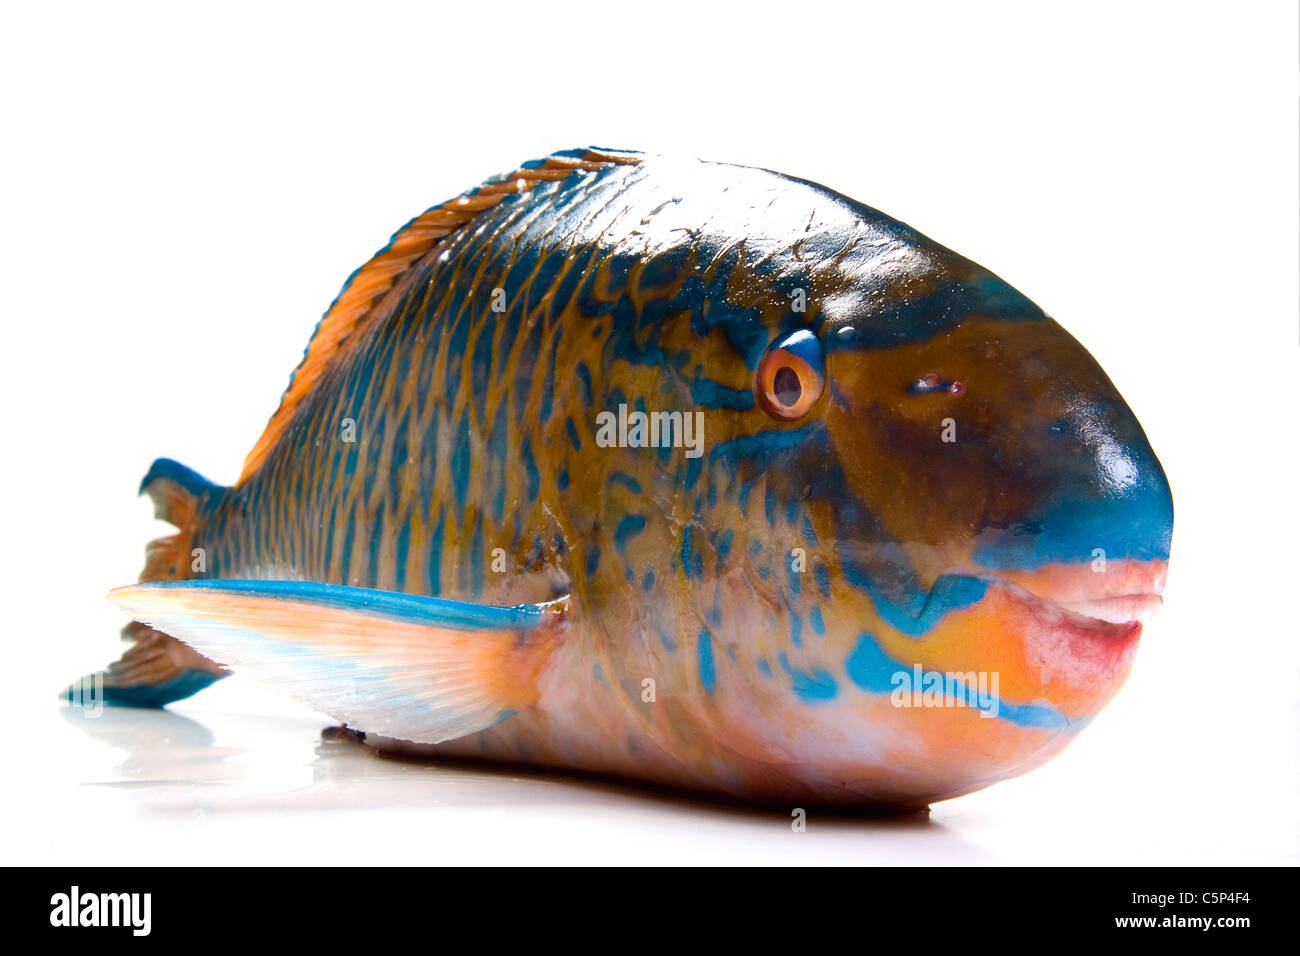 Ricette per pesci Immagini senza sfondo e Foto Stock ritagliate - Alamy